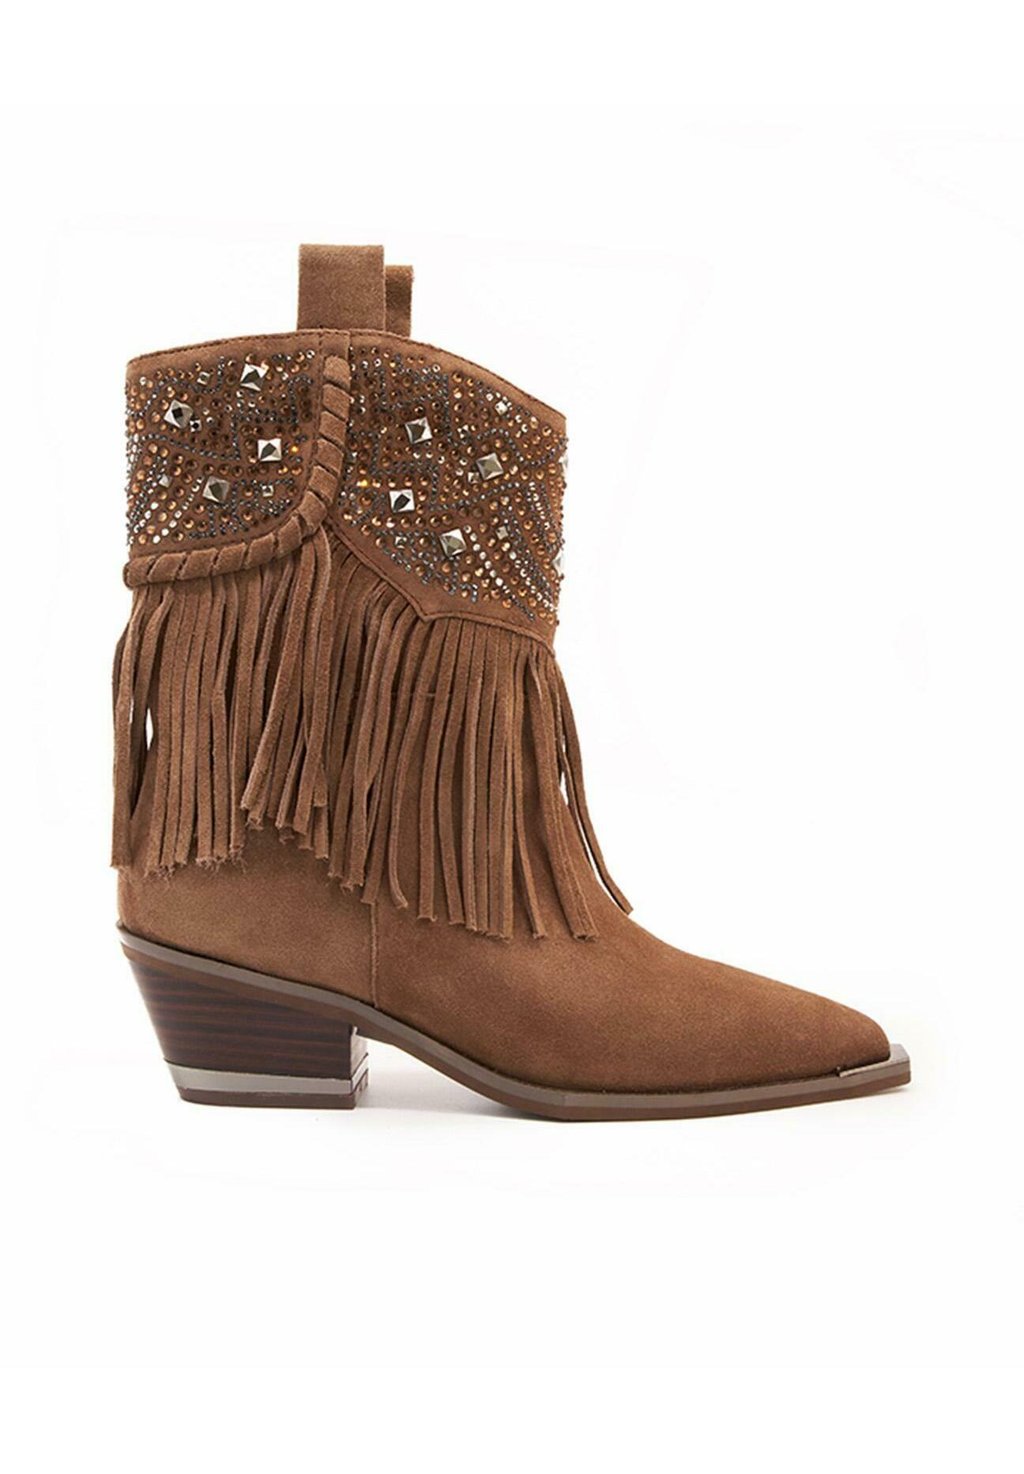 Техасские/байкерские ботинки Alma en Pena, коричневые техасские байкерские ботинки alma en pena коричневые